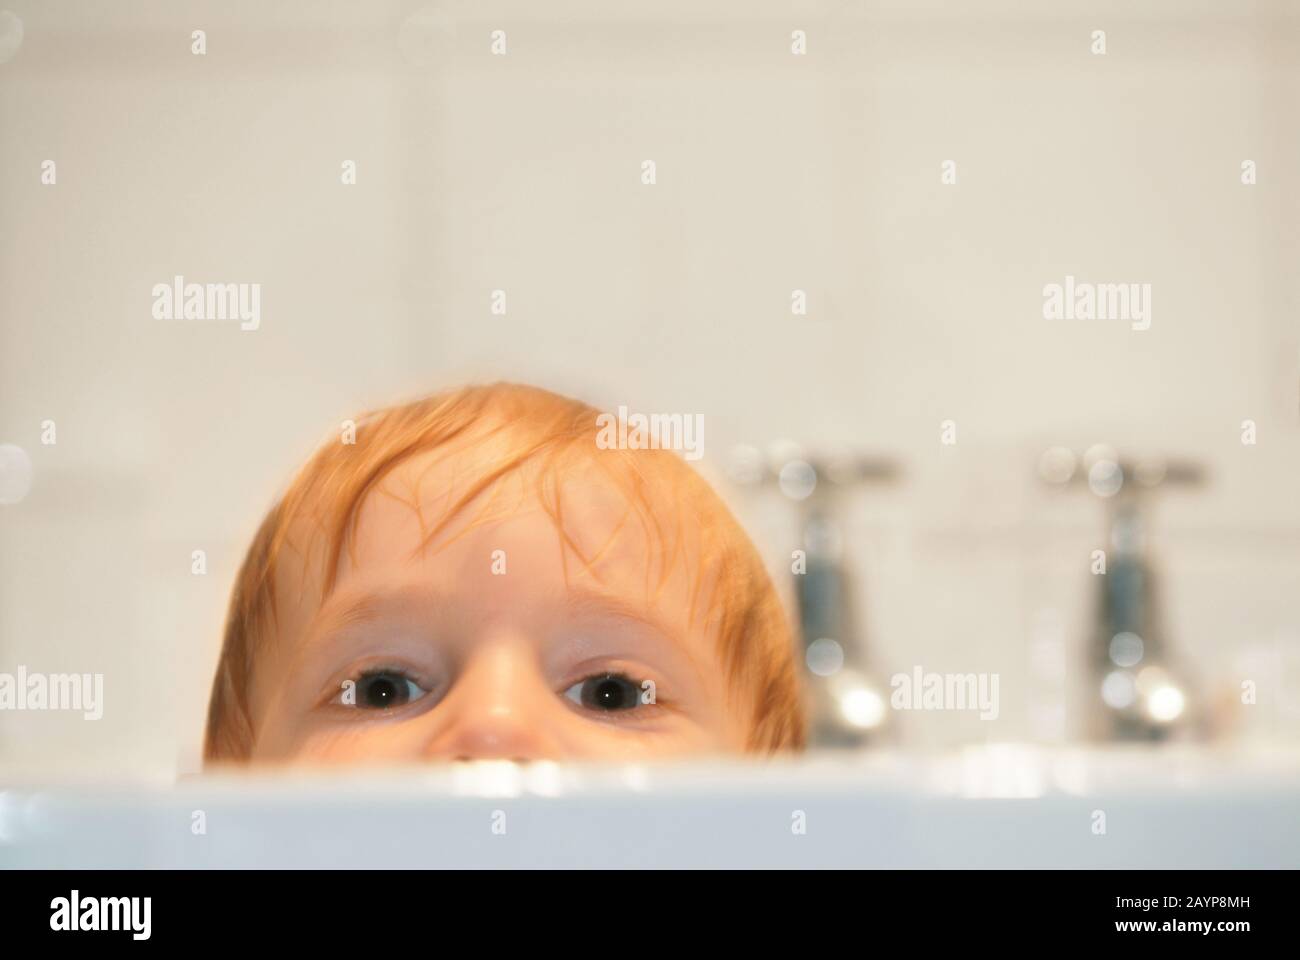 Jeune enfant dans le bain Banque D'Images